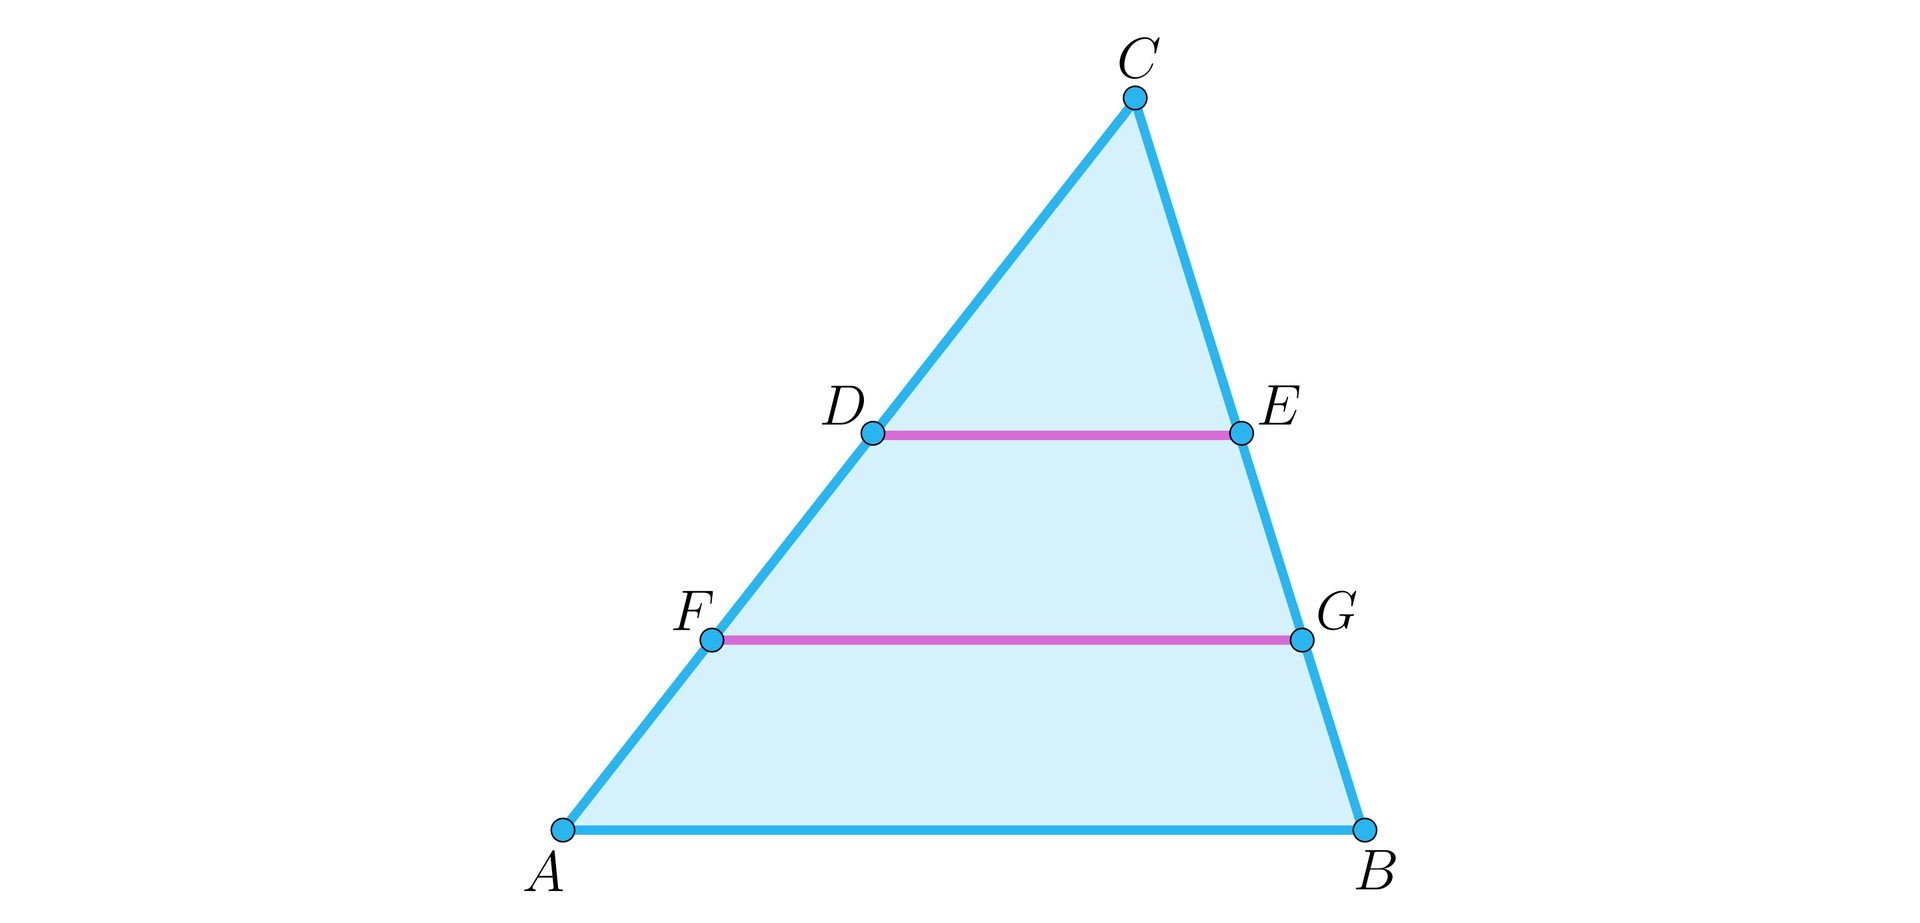 Ilustracja przedstawia trójkąt A B C. Odcinki DE, FG oraz AB sa do siebie równoległe. Punkty D F oraz E G zaznaczone są na bokach trójkąta. 